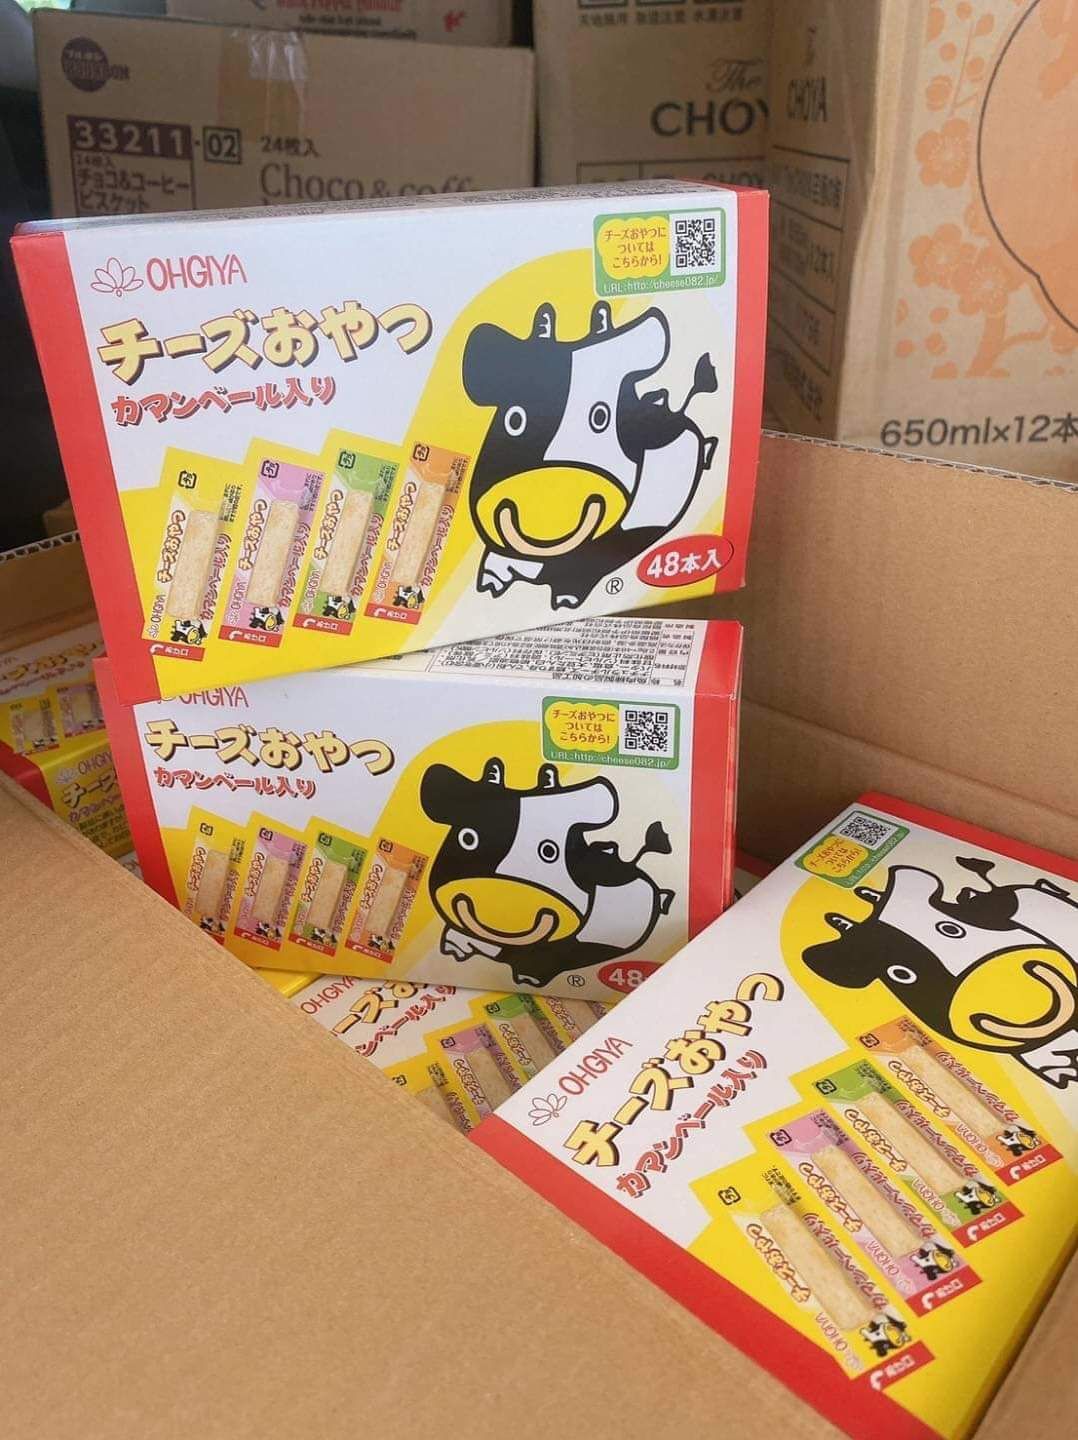 Ohguya Cheese Sticks ชีสสติ๊ก ชีสวัว ชีสเด็ก ชีสทานเล่น ชีสญี่ปุ่น ขนมญี่ปุ่น ขนมติดบ้าน